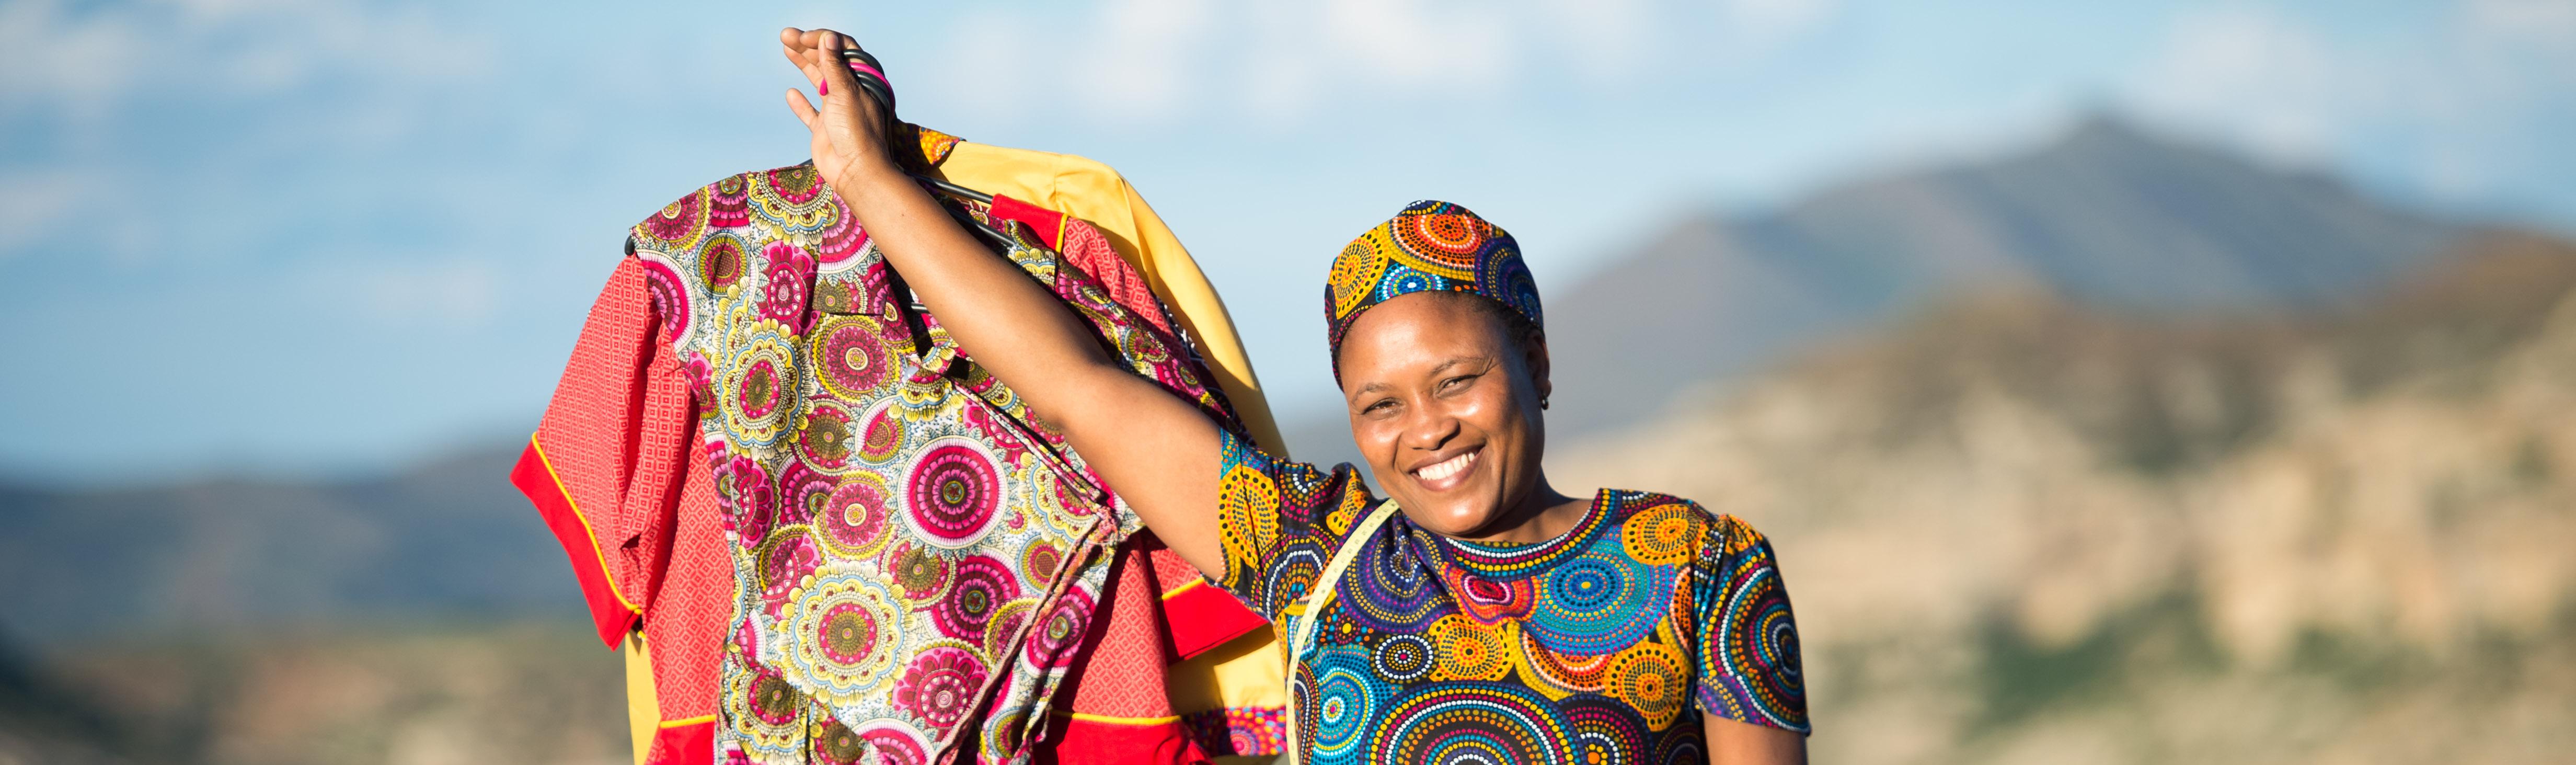 LesothoMarorisang Souru (41) ist eine Schneiderin und lebt im Dorf Malimong Ha Tsimatsi im ländlichen Lesotho. Nach einem Unfall in ihrer Kindheit ist sie körperbehindert und kann nur noch kurze Strecken mit einer Holzkrücke gehen. Das hat Marorisang Souru aber nicht davon abgehalten, einen Beruf zu ergreifen und auf eigenen Beinen zu stehen. Als Schneiderin fertigt sie inzwischen Schuluniformen, vor allem aber traditionelle Kleider für festliche Anlässe.Foto: Helge Bendl / Brot für die WeltAlle Rechte vorbehalten. // All rights reserved.